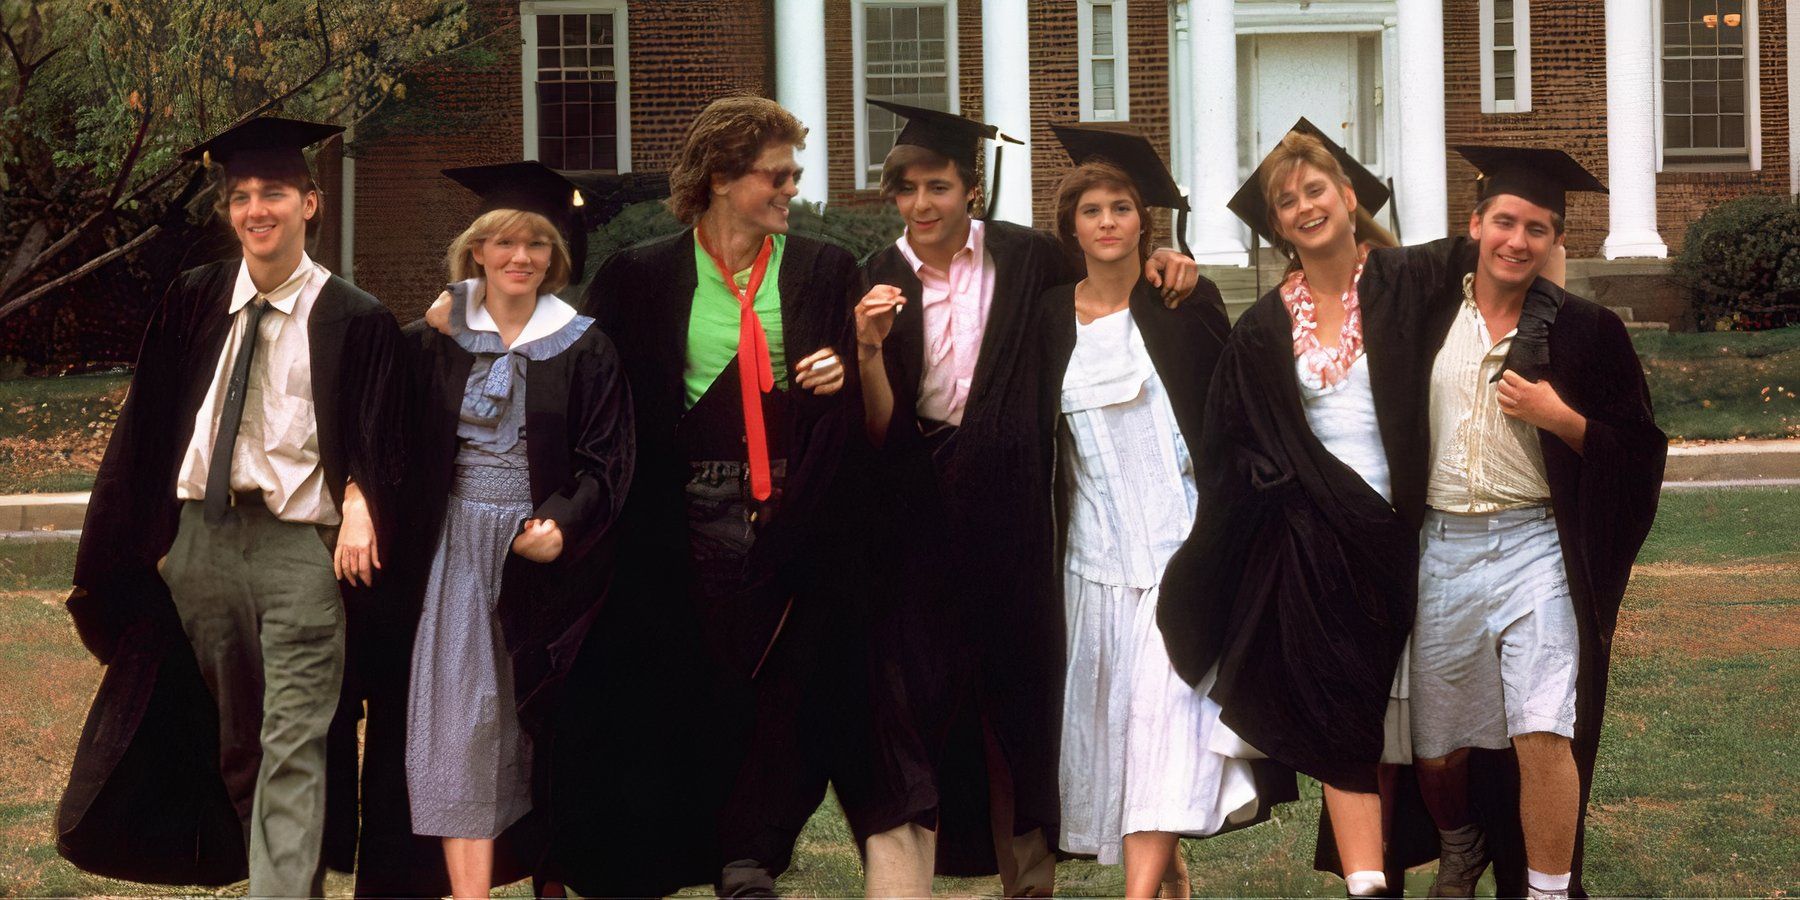 Captura de pantalla de los siete personajes principales de St. Elmo's Fire alejándose del edificio de la universidad con togas y birretes de graduación.